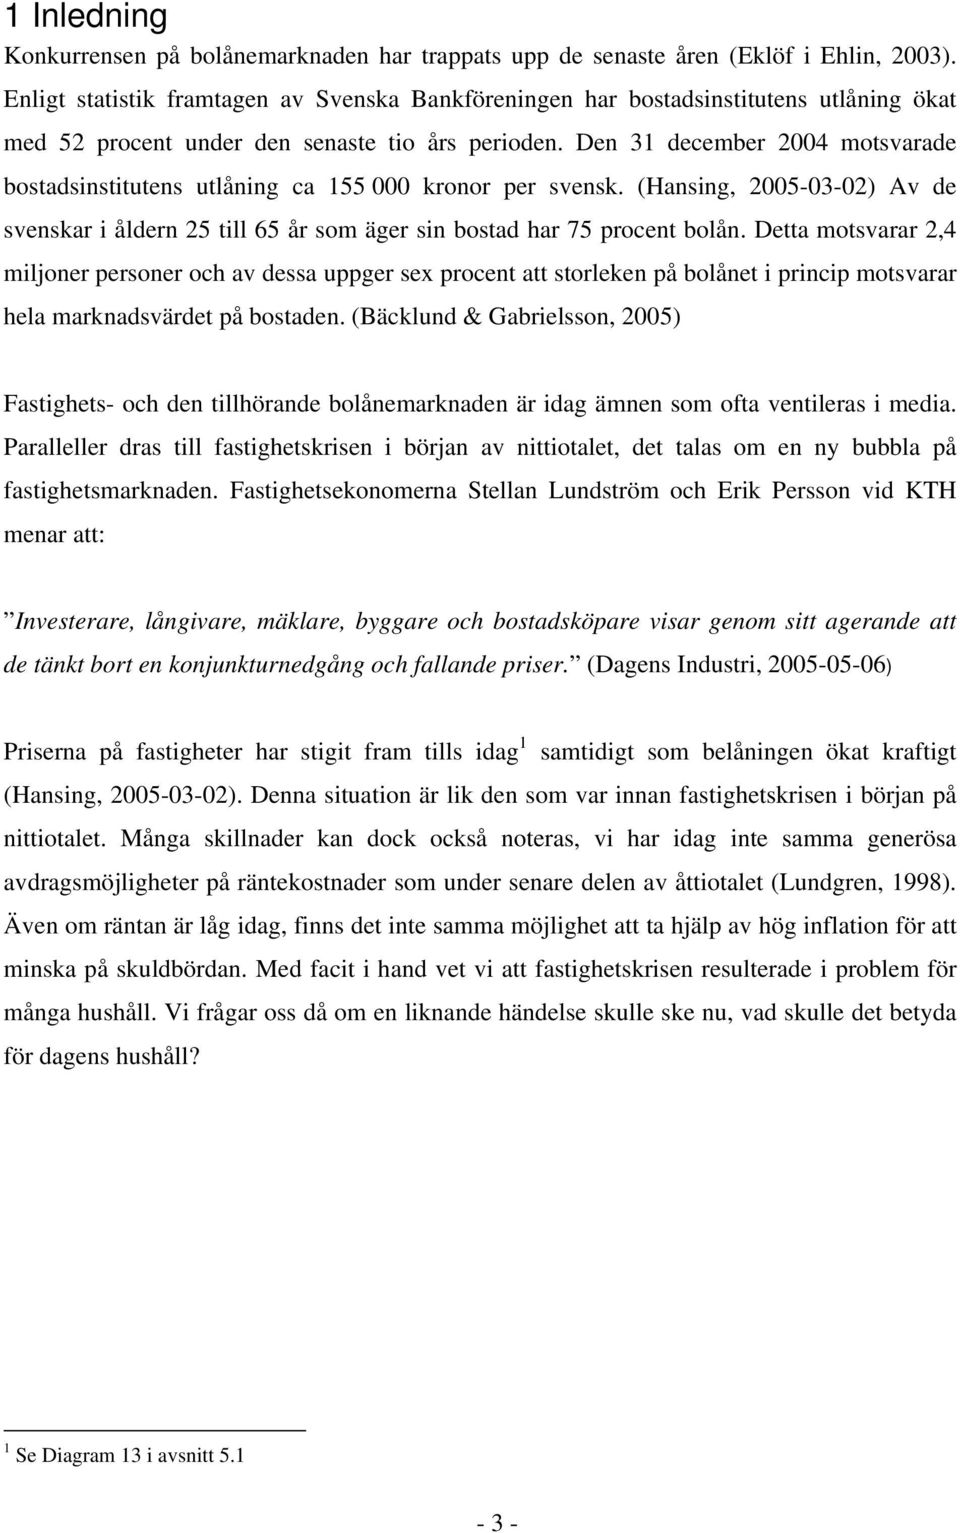 Den 31 december 2004 motsvarade bostadsinstitutens utlåning ca 155 000 kronor per svensk. (Hansing, 2005-03-02) Av de svenskar i åldern 25 till 65 år som äger sin bostad har 75 procent bolån.